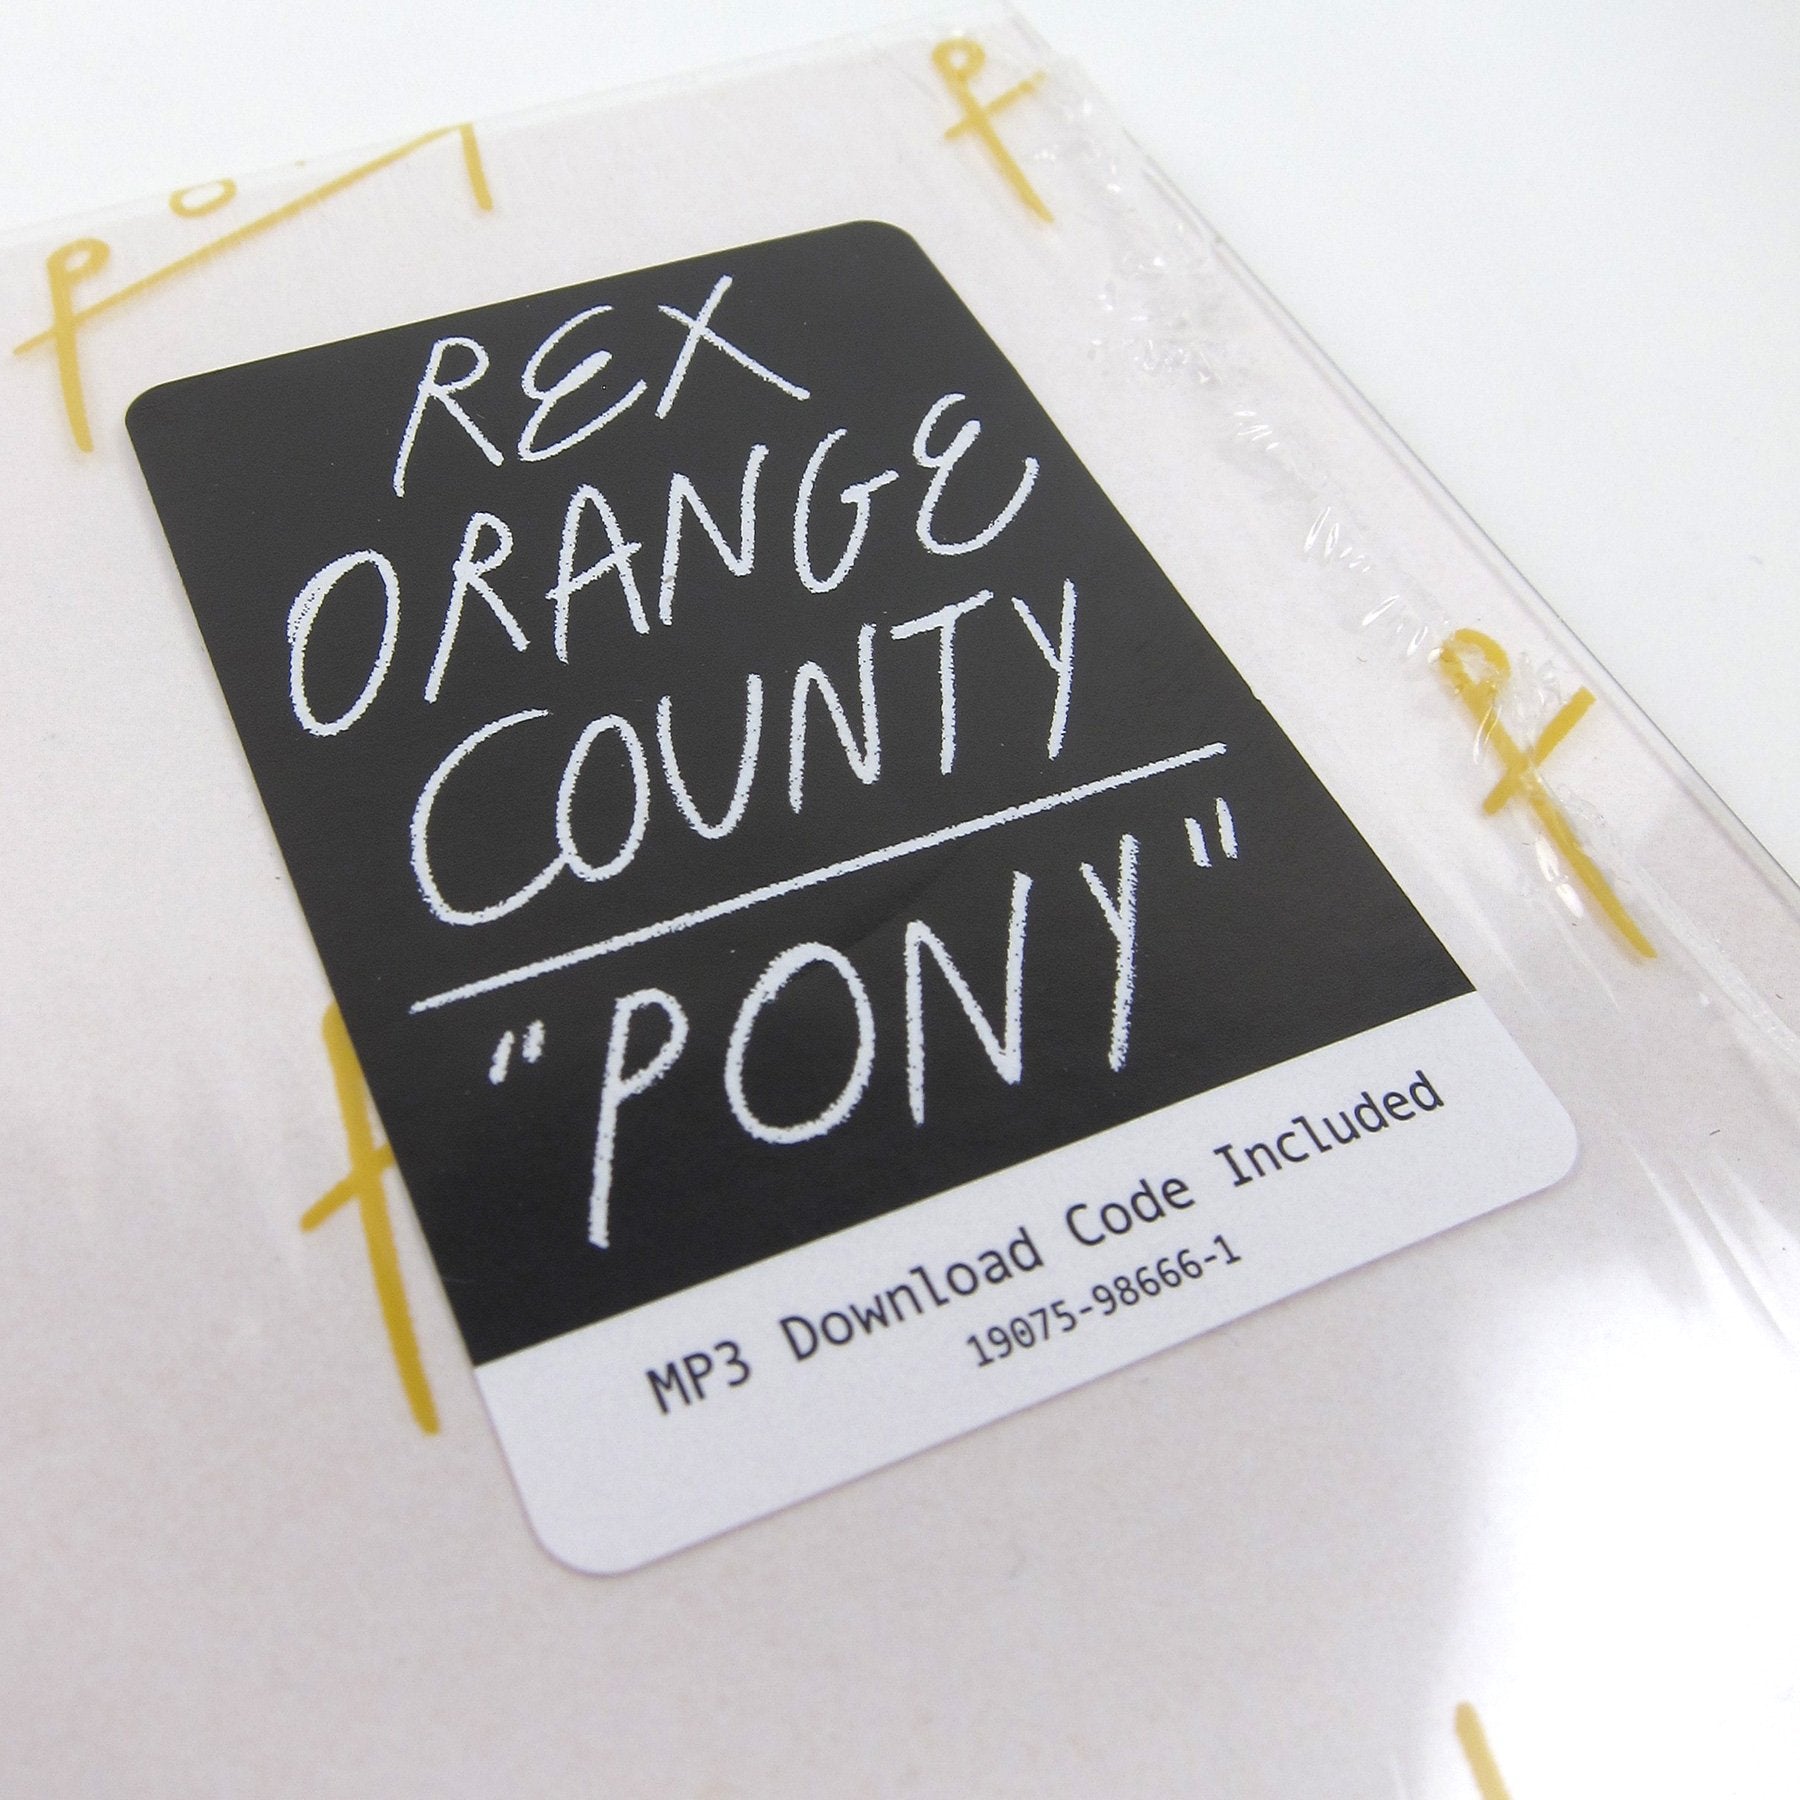 Rex Orange County: Pony Vinyl LP